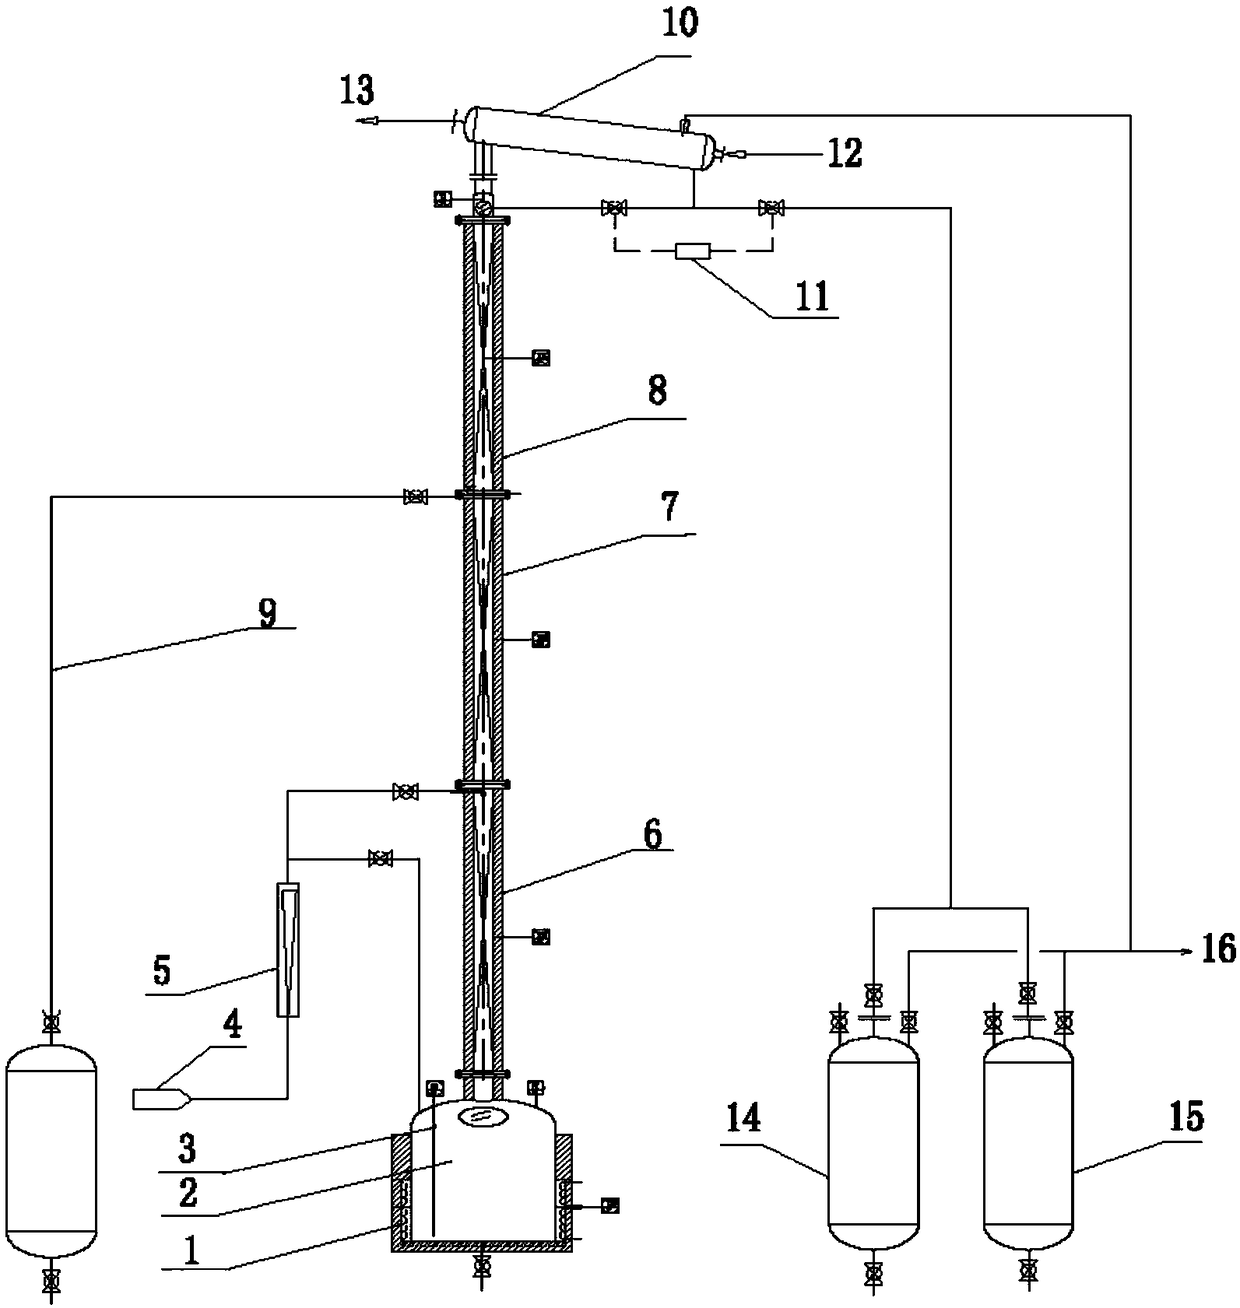 Distilling method for reducing fusel oil in baijiu